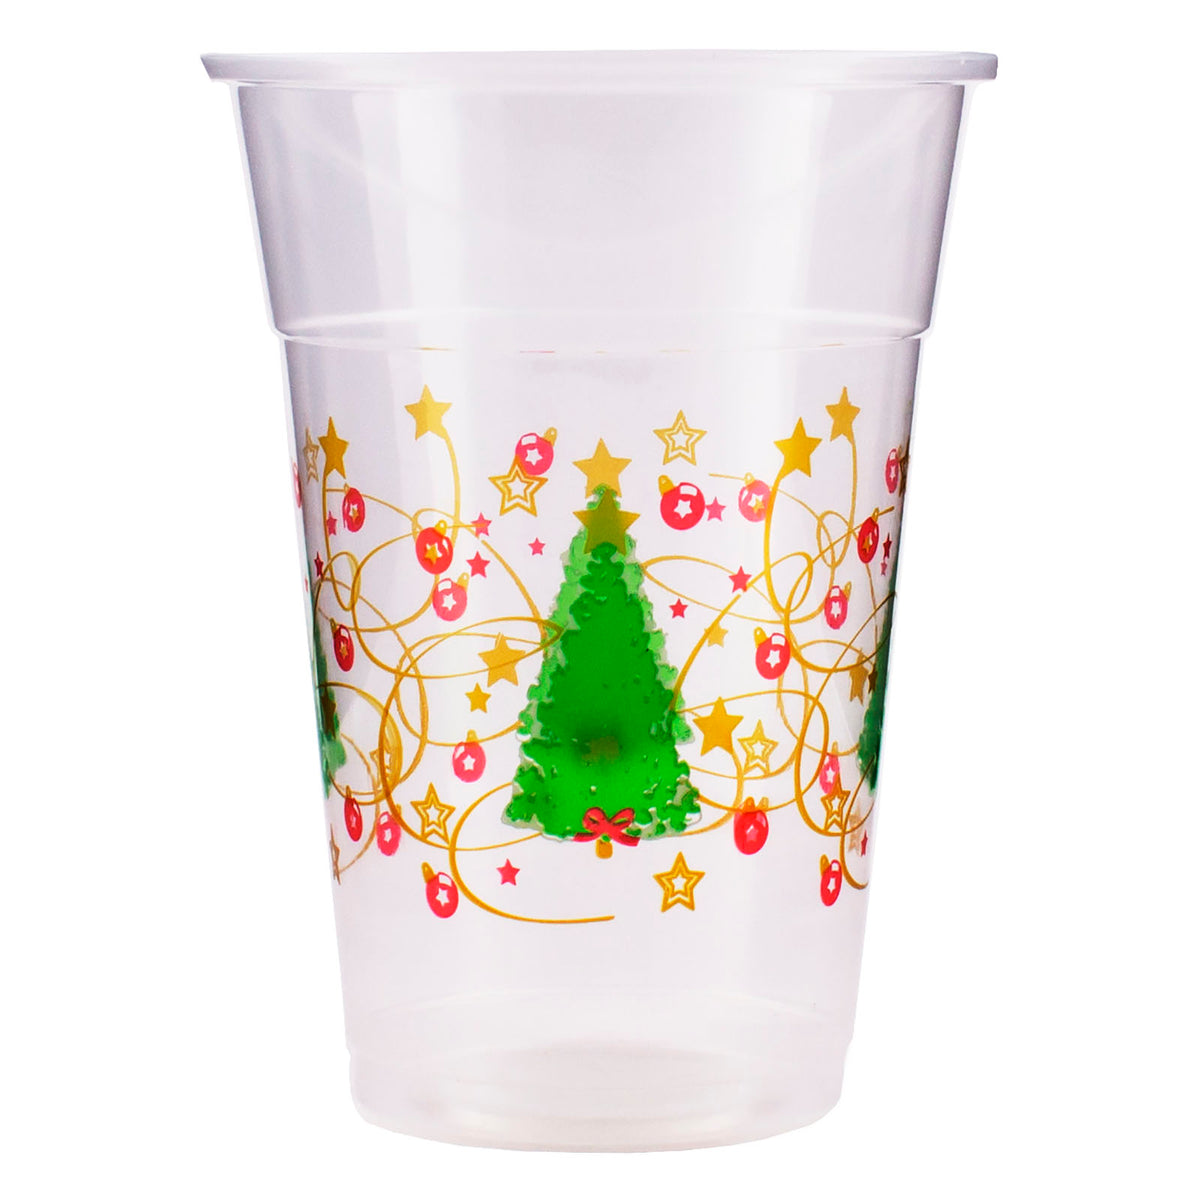 https://barproducts.com/cdn/shop/products/Christmas-tree-plastic-cup_f99a7ca8-83f1-4ea2-bf48-3d9a280a3ea6_1200x1200.jpg?v=1638908637